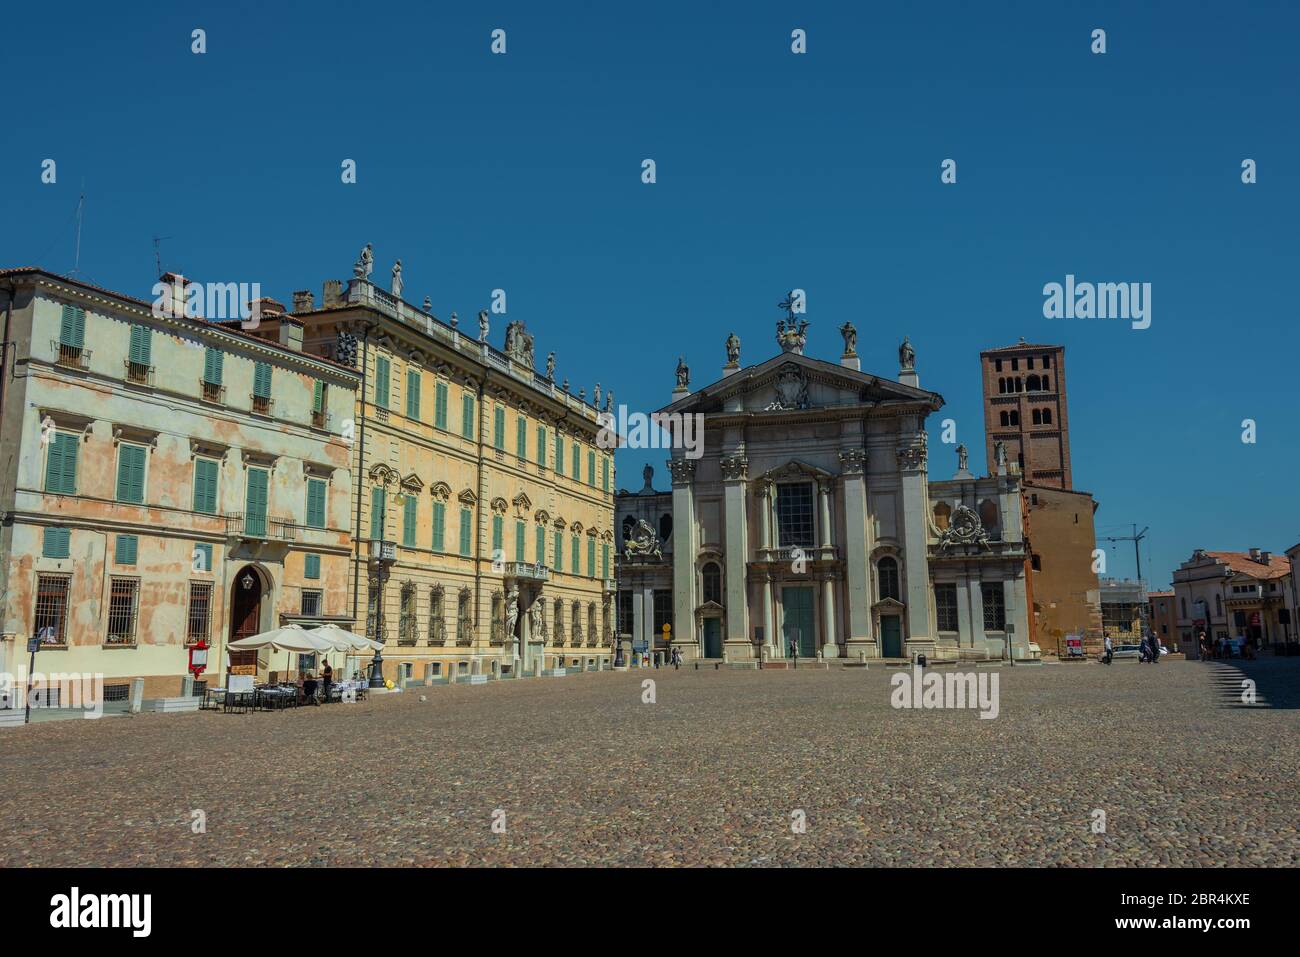 Der berühmte Renaissance-Platz Piazza Sordello in Mantua. Blick auf die Kathedrale San Pietro und das historische Gebäude. Stockfoto